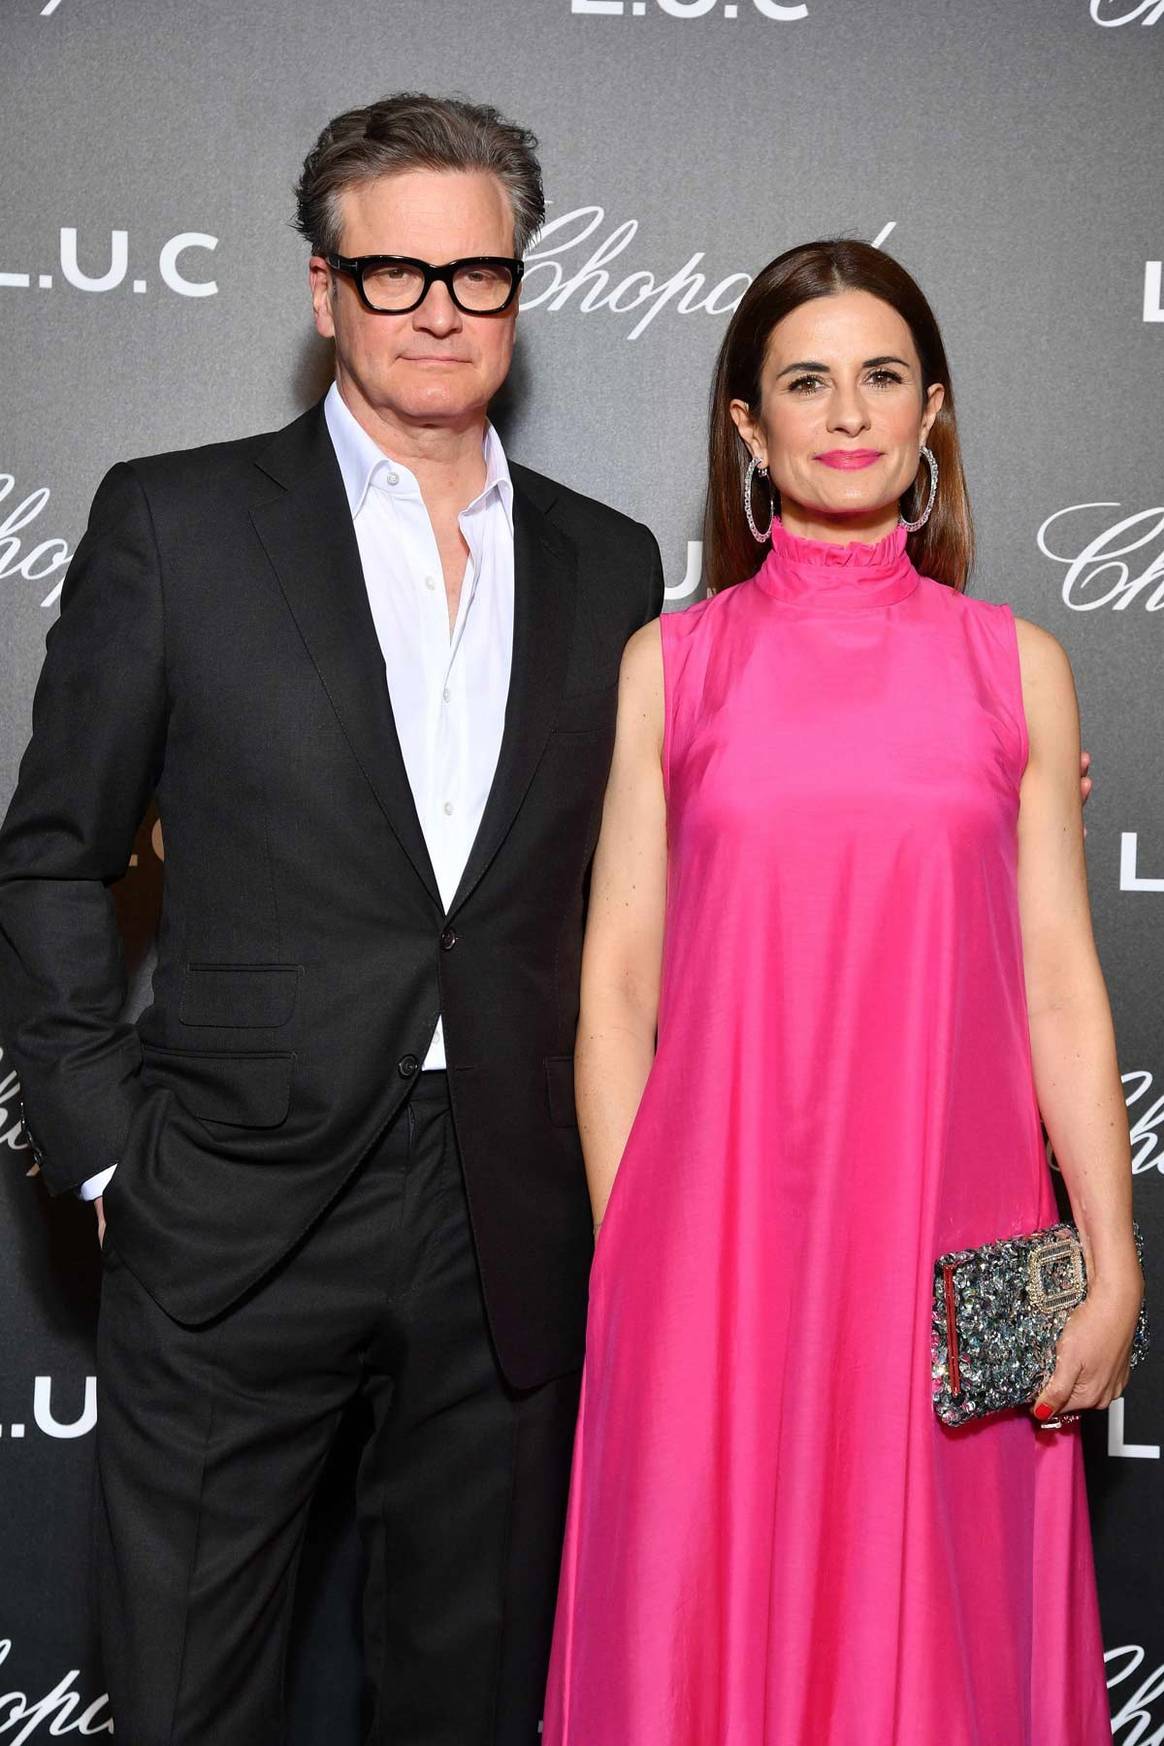 Colin Firth & Livia Giuggioli